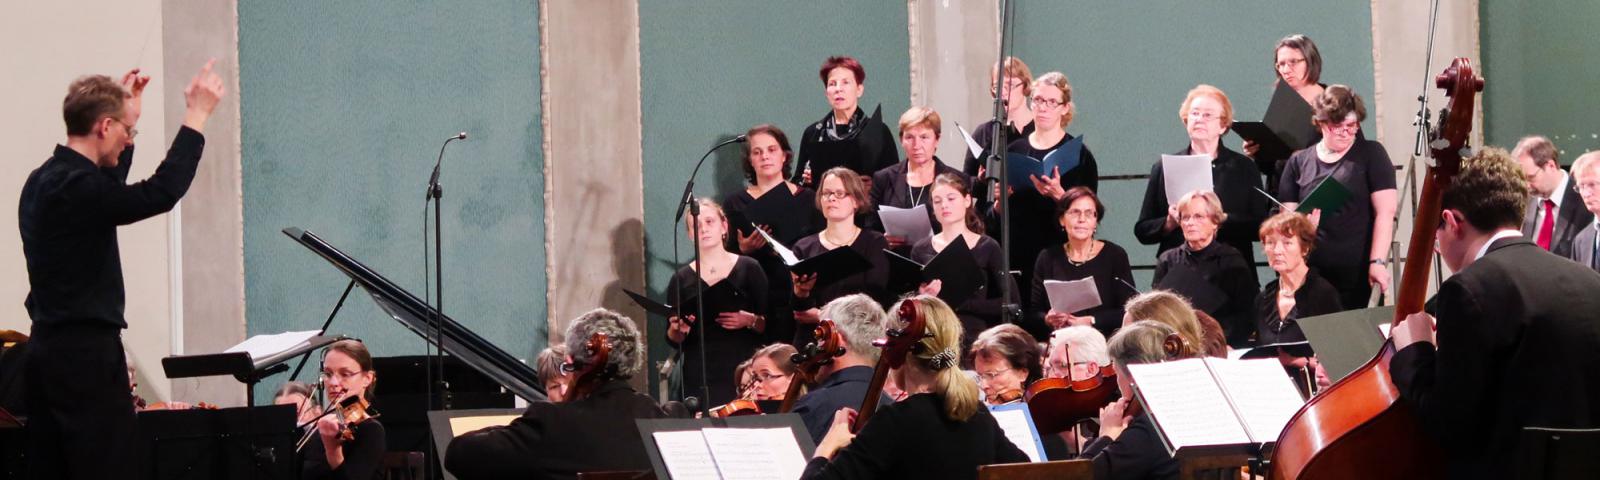 Kantor Rüger dirigiert Chor und Orchester